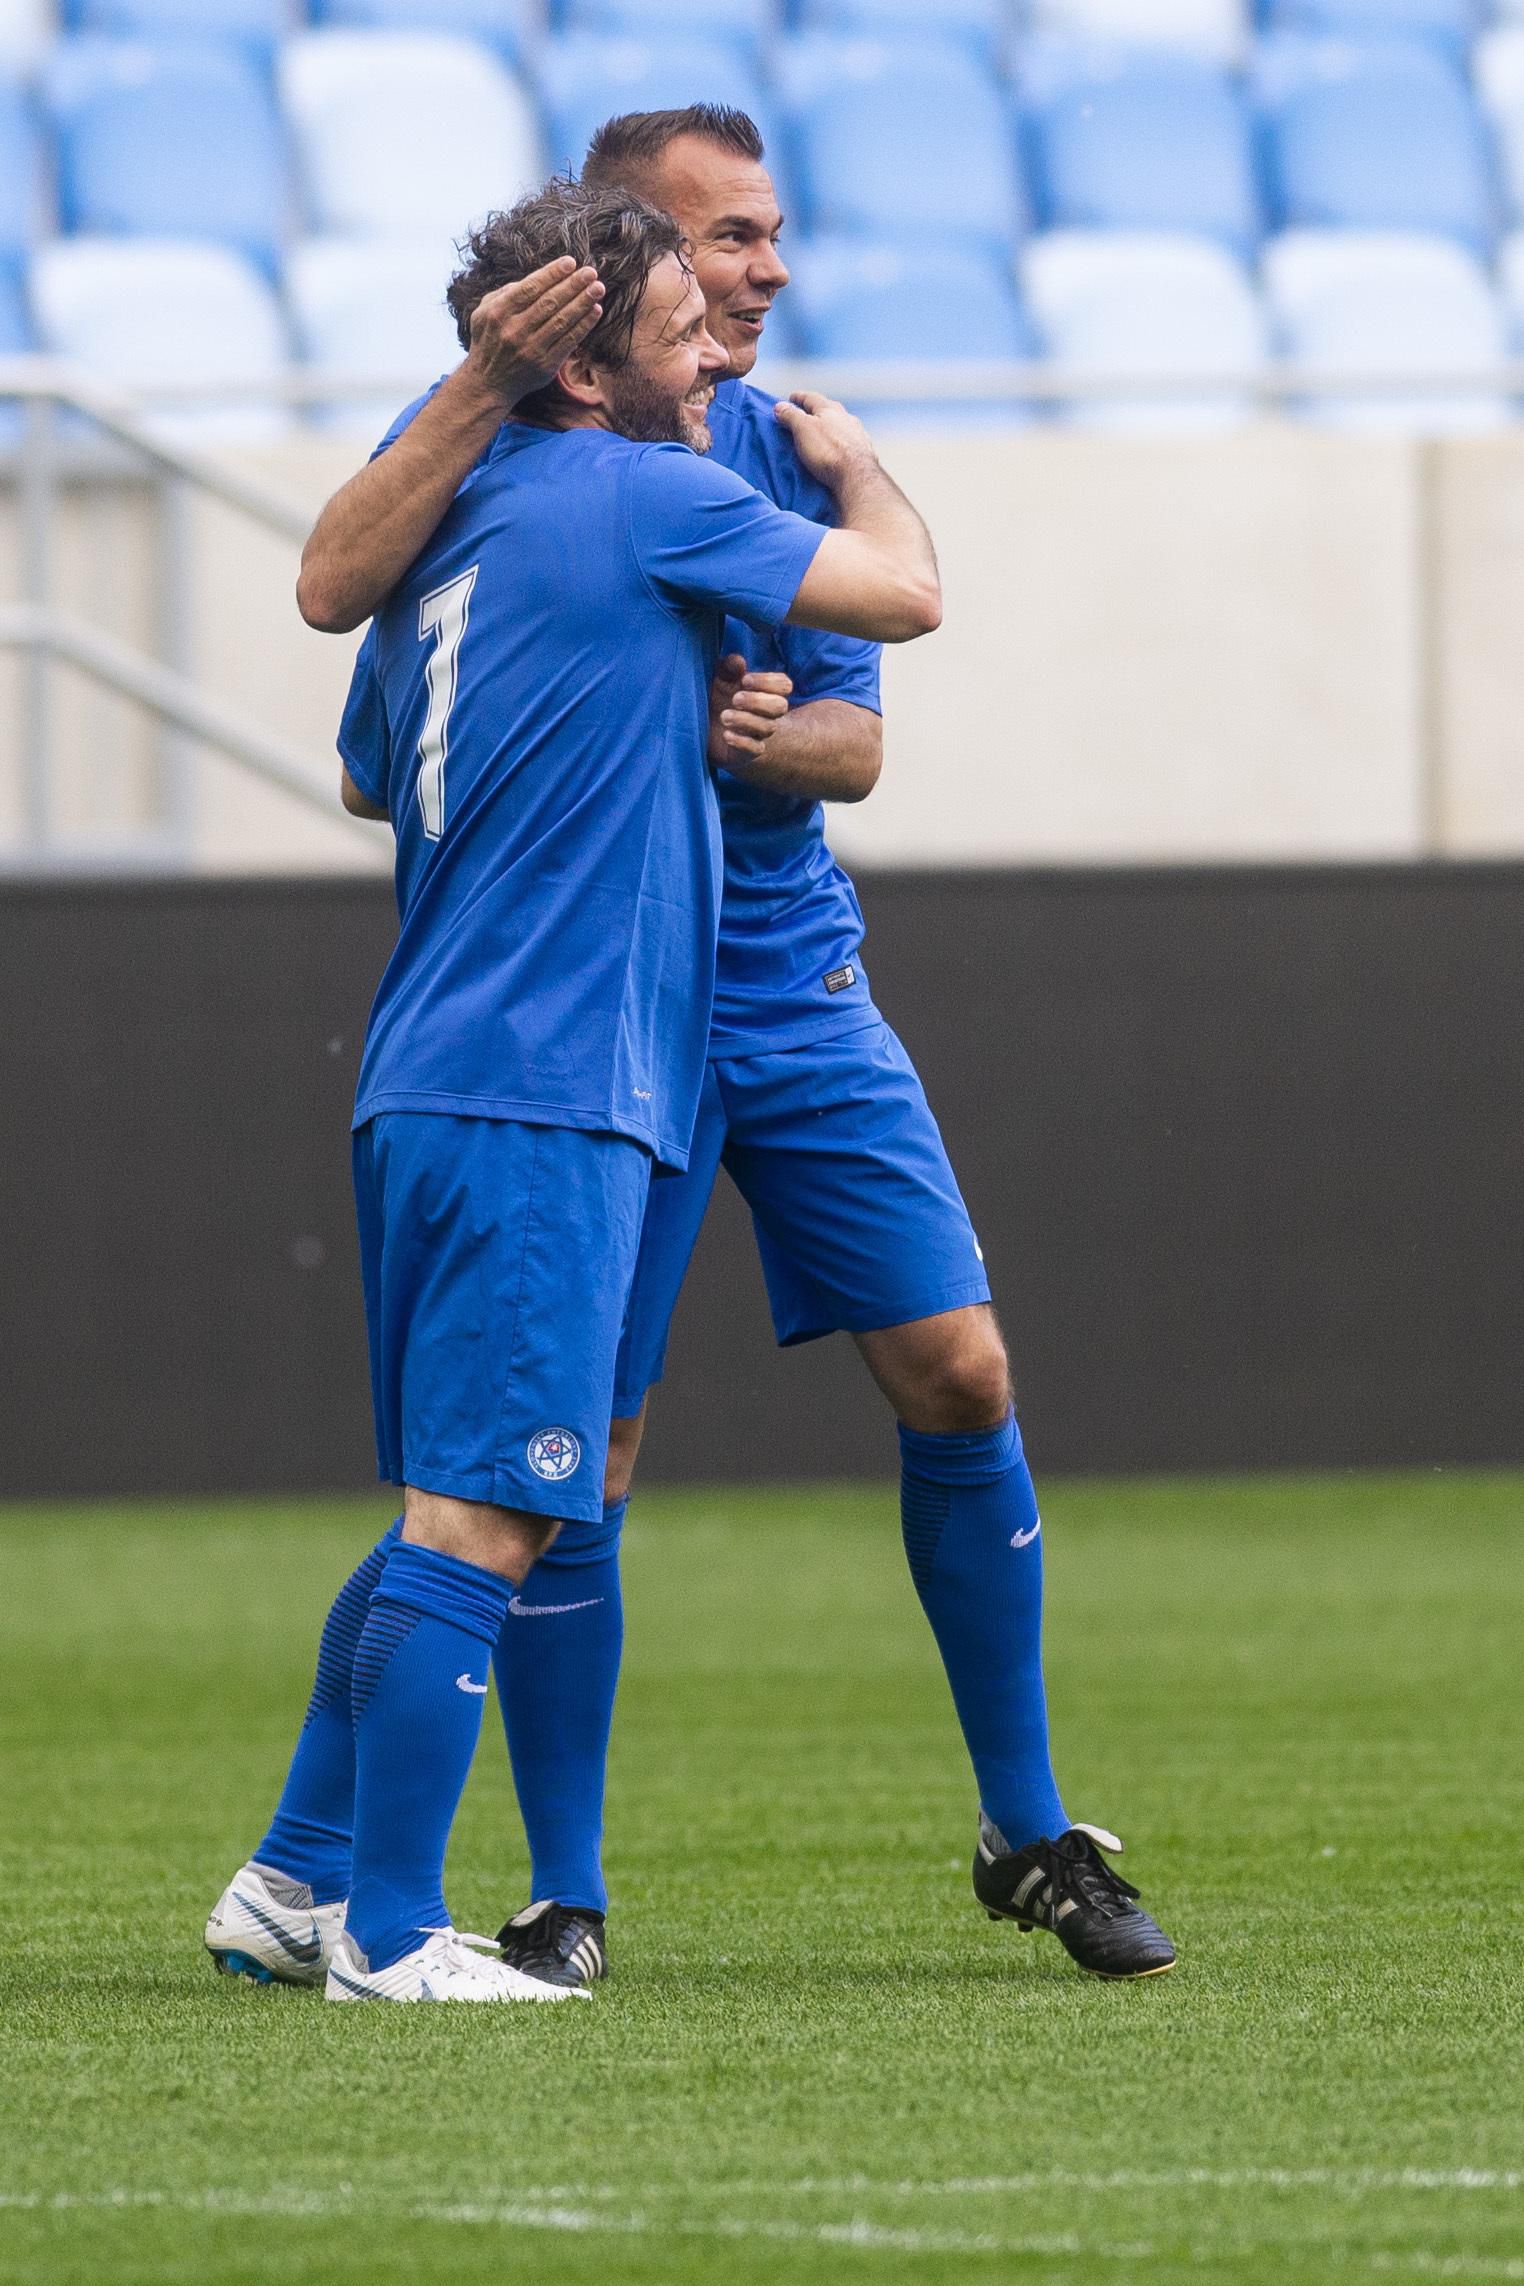 Karol Kisel a Szilárd Németh sa radujú z gólu v spomienkovom zápase.